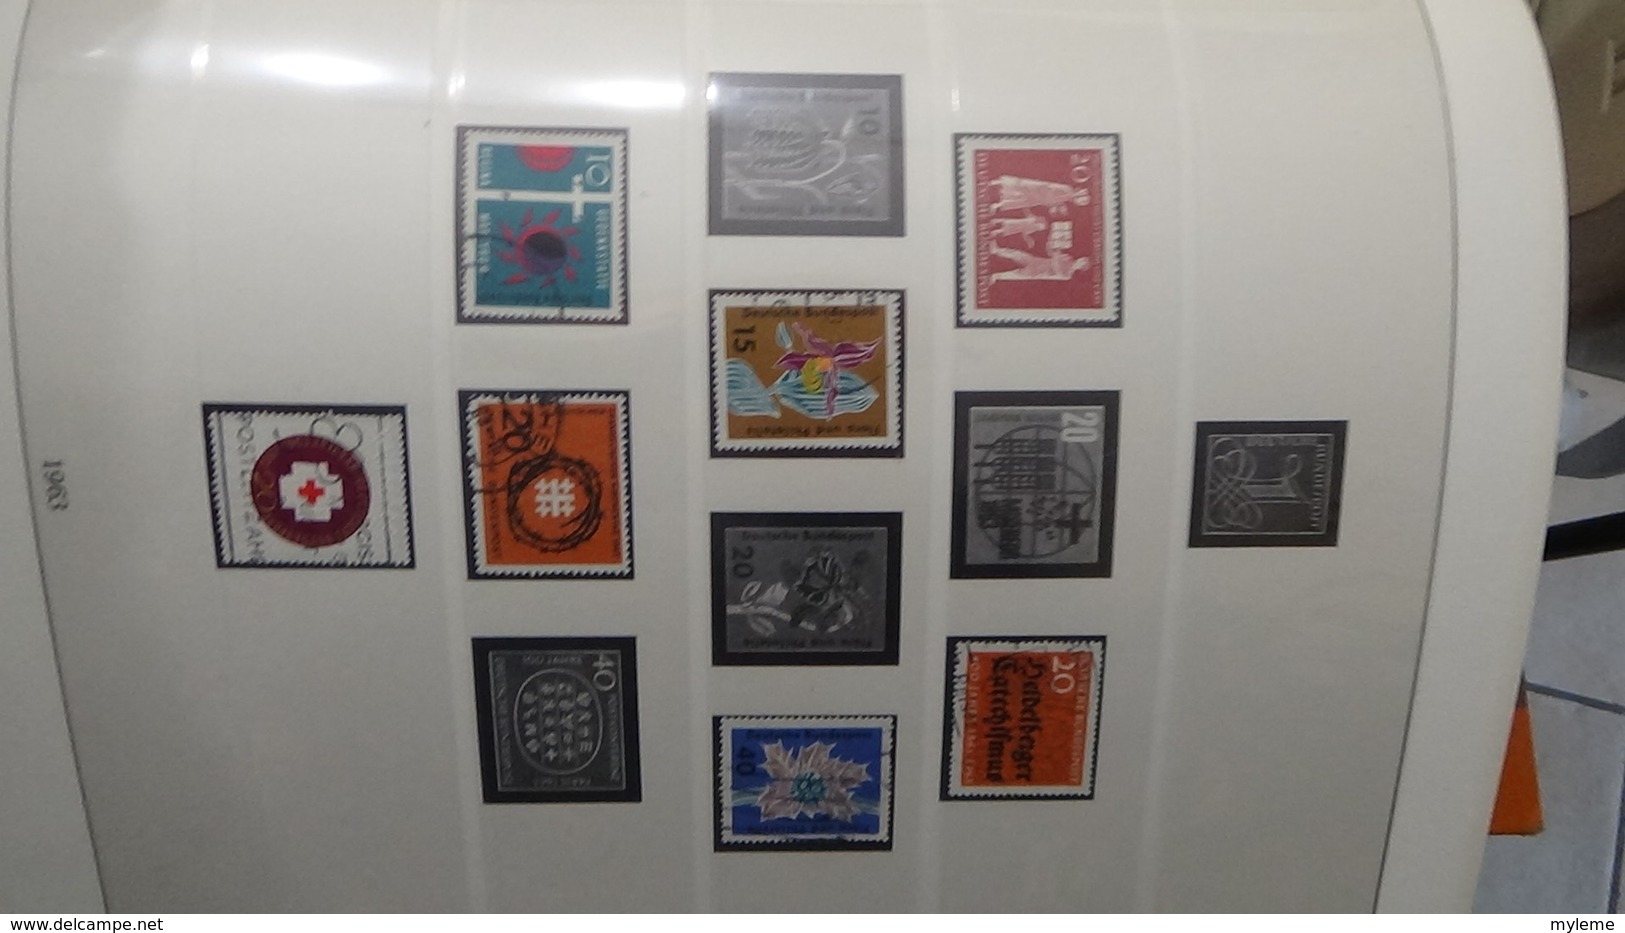 B402 Album LINDNER d'Allemagne de 1963 à 1972 en timbres+ blocs ** et oblitérés + documents philatéliques